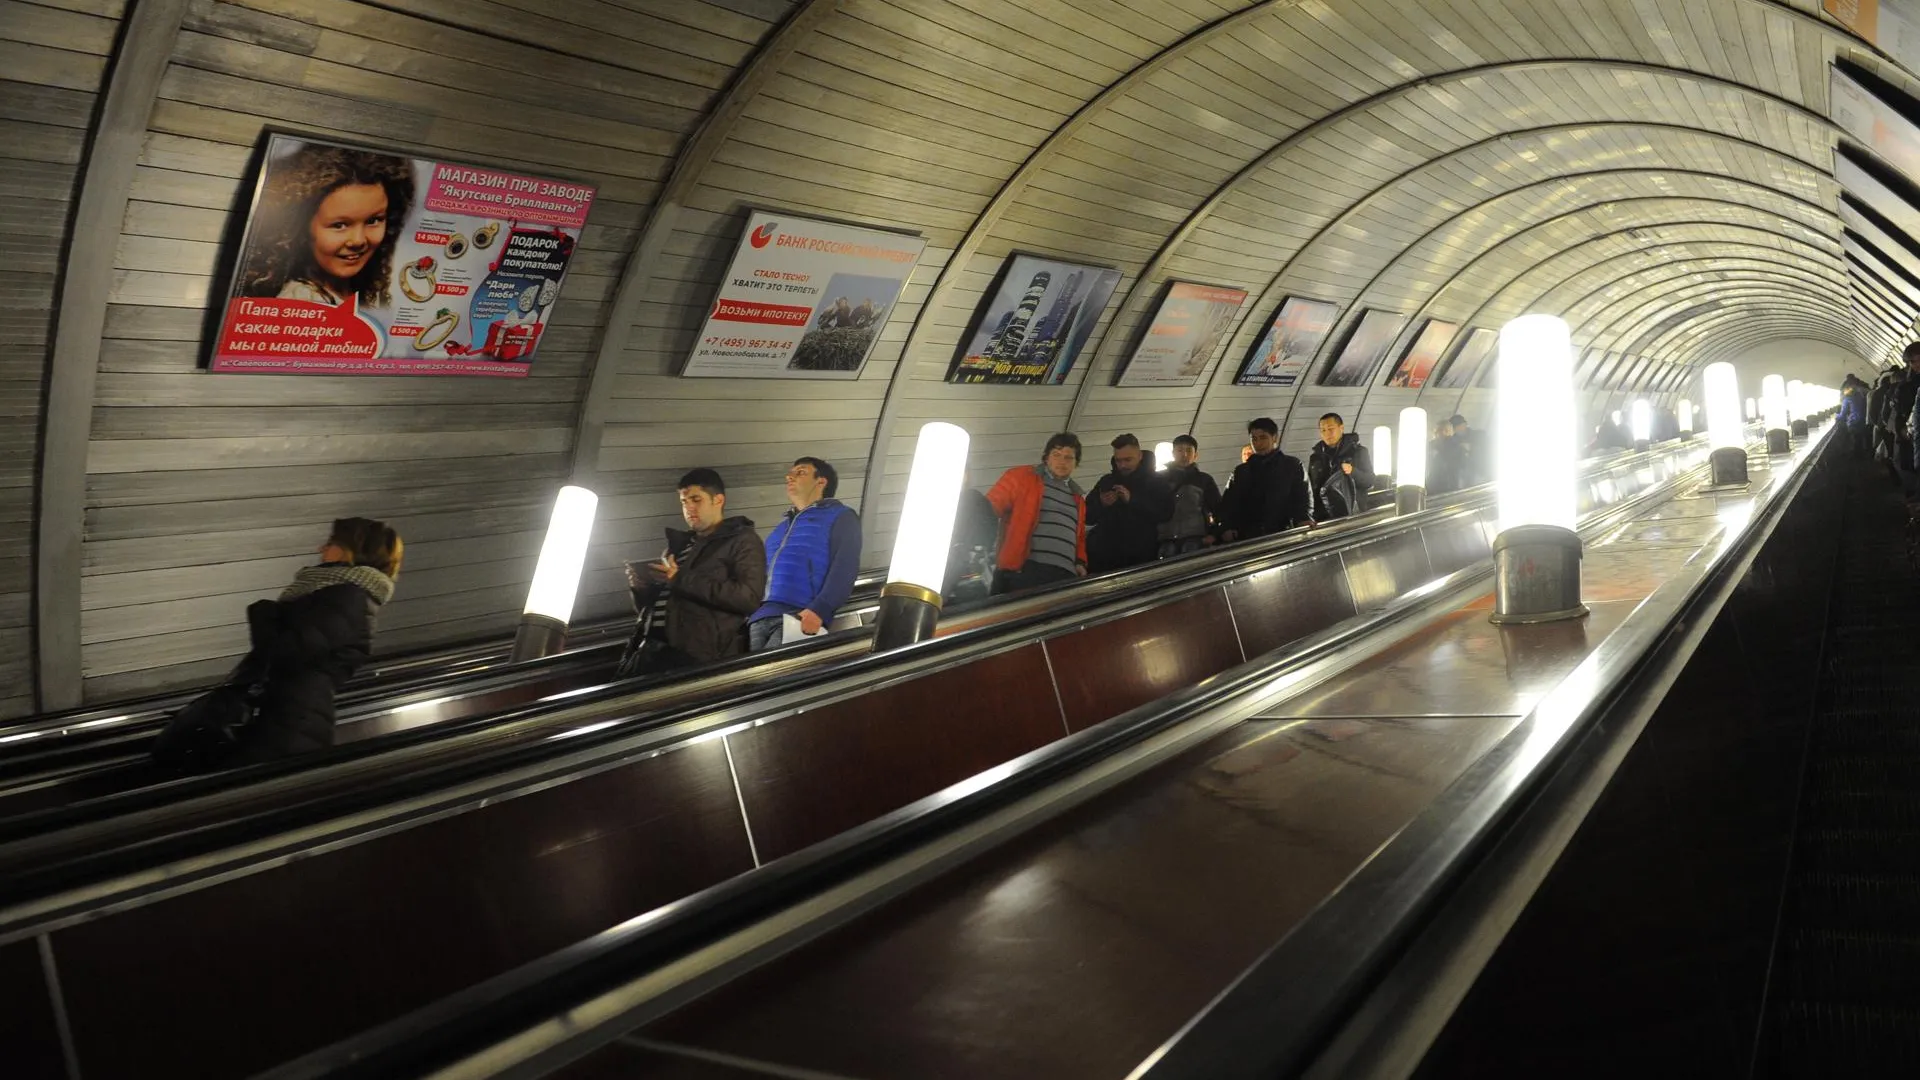 Около 10 тыс интеллектуальных систем видеонаблюдения появится в метро Москвы